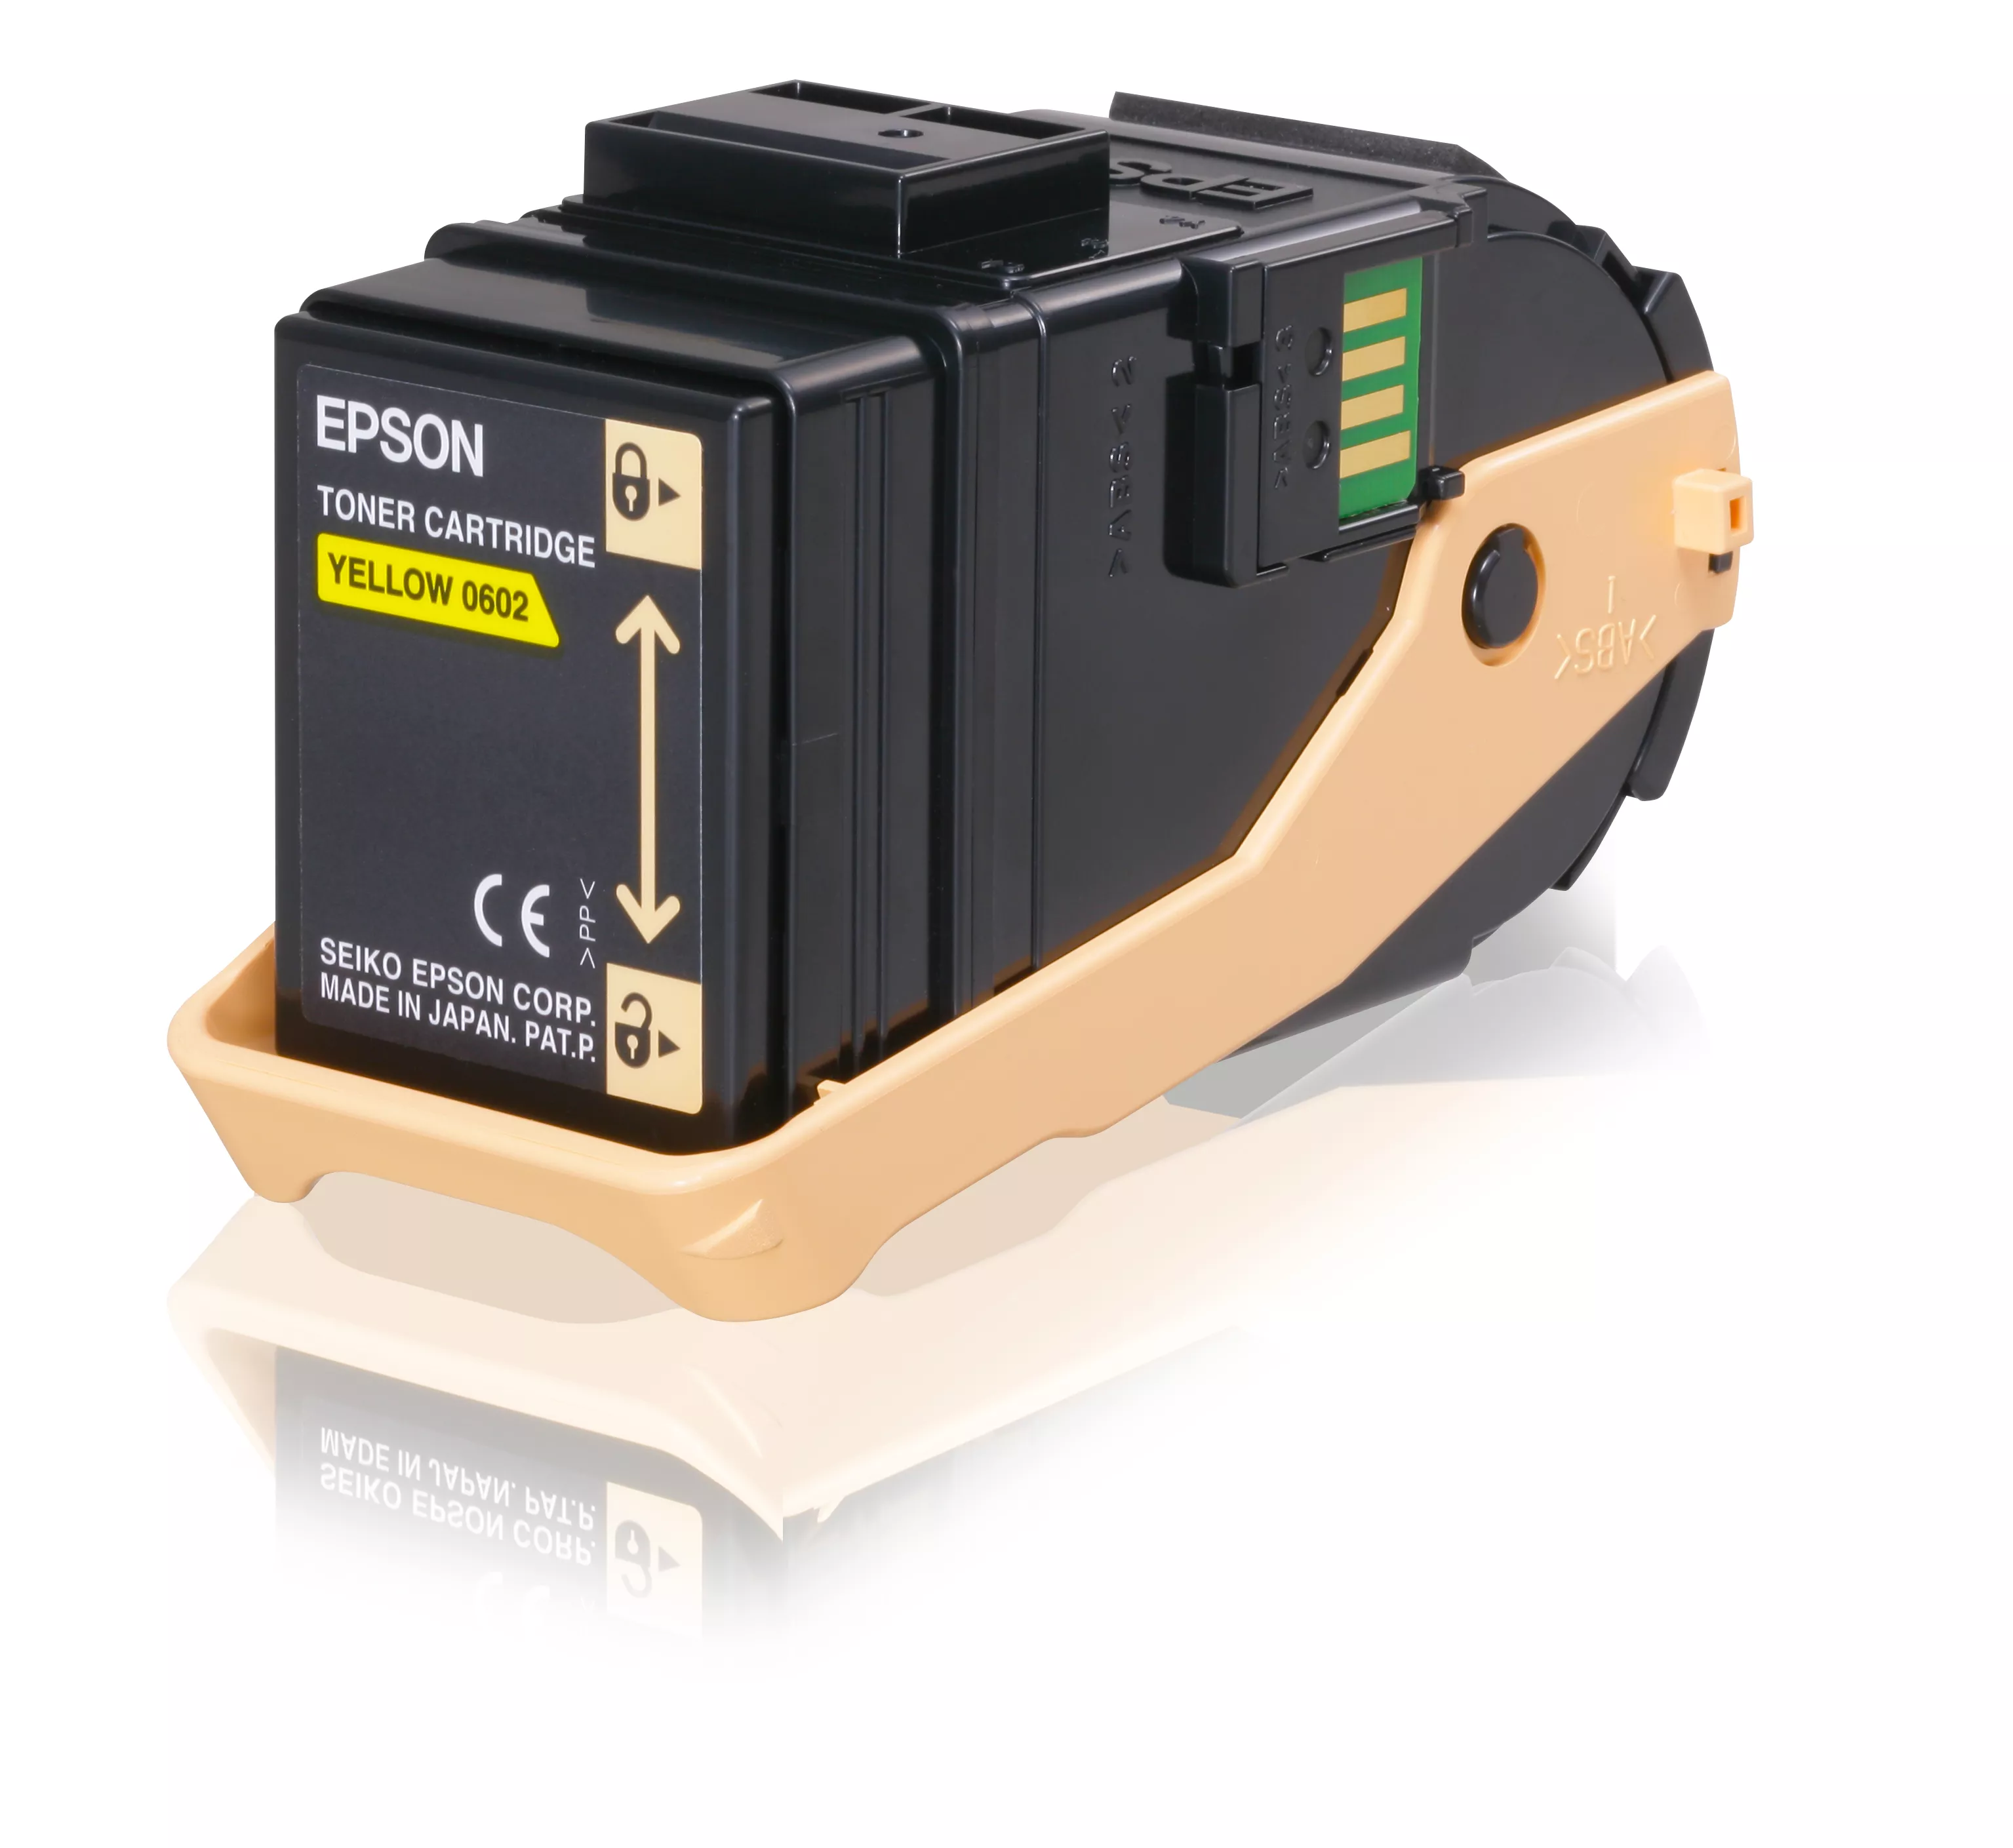 Achat EPSON AL-C9300N cartouche de toner jaune capacité - 8715946481258